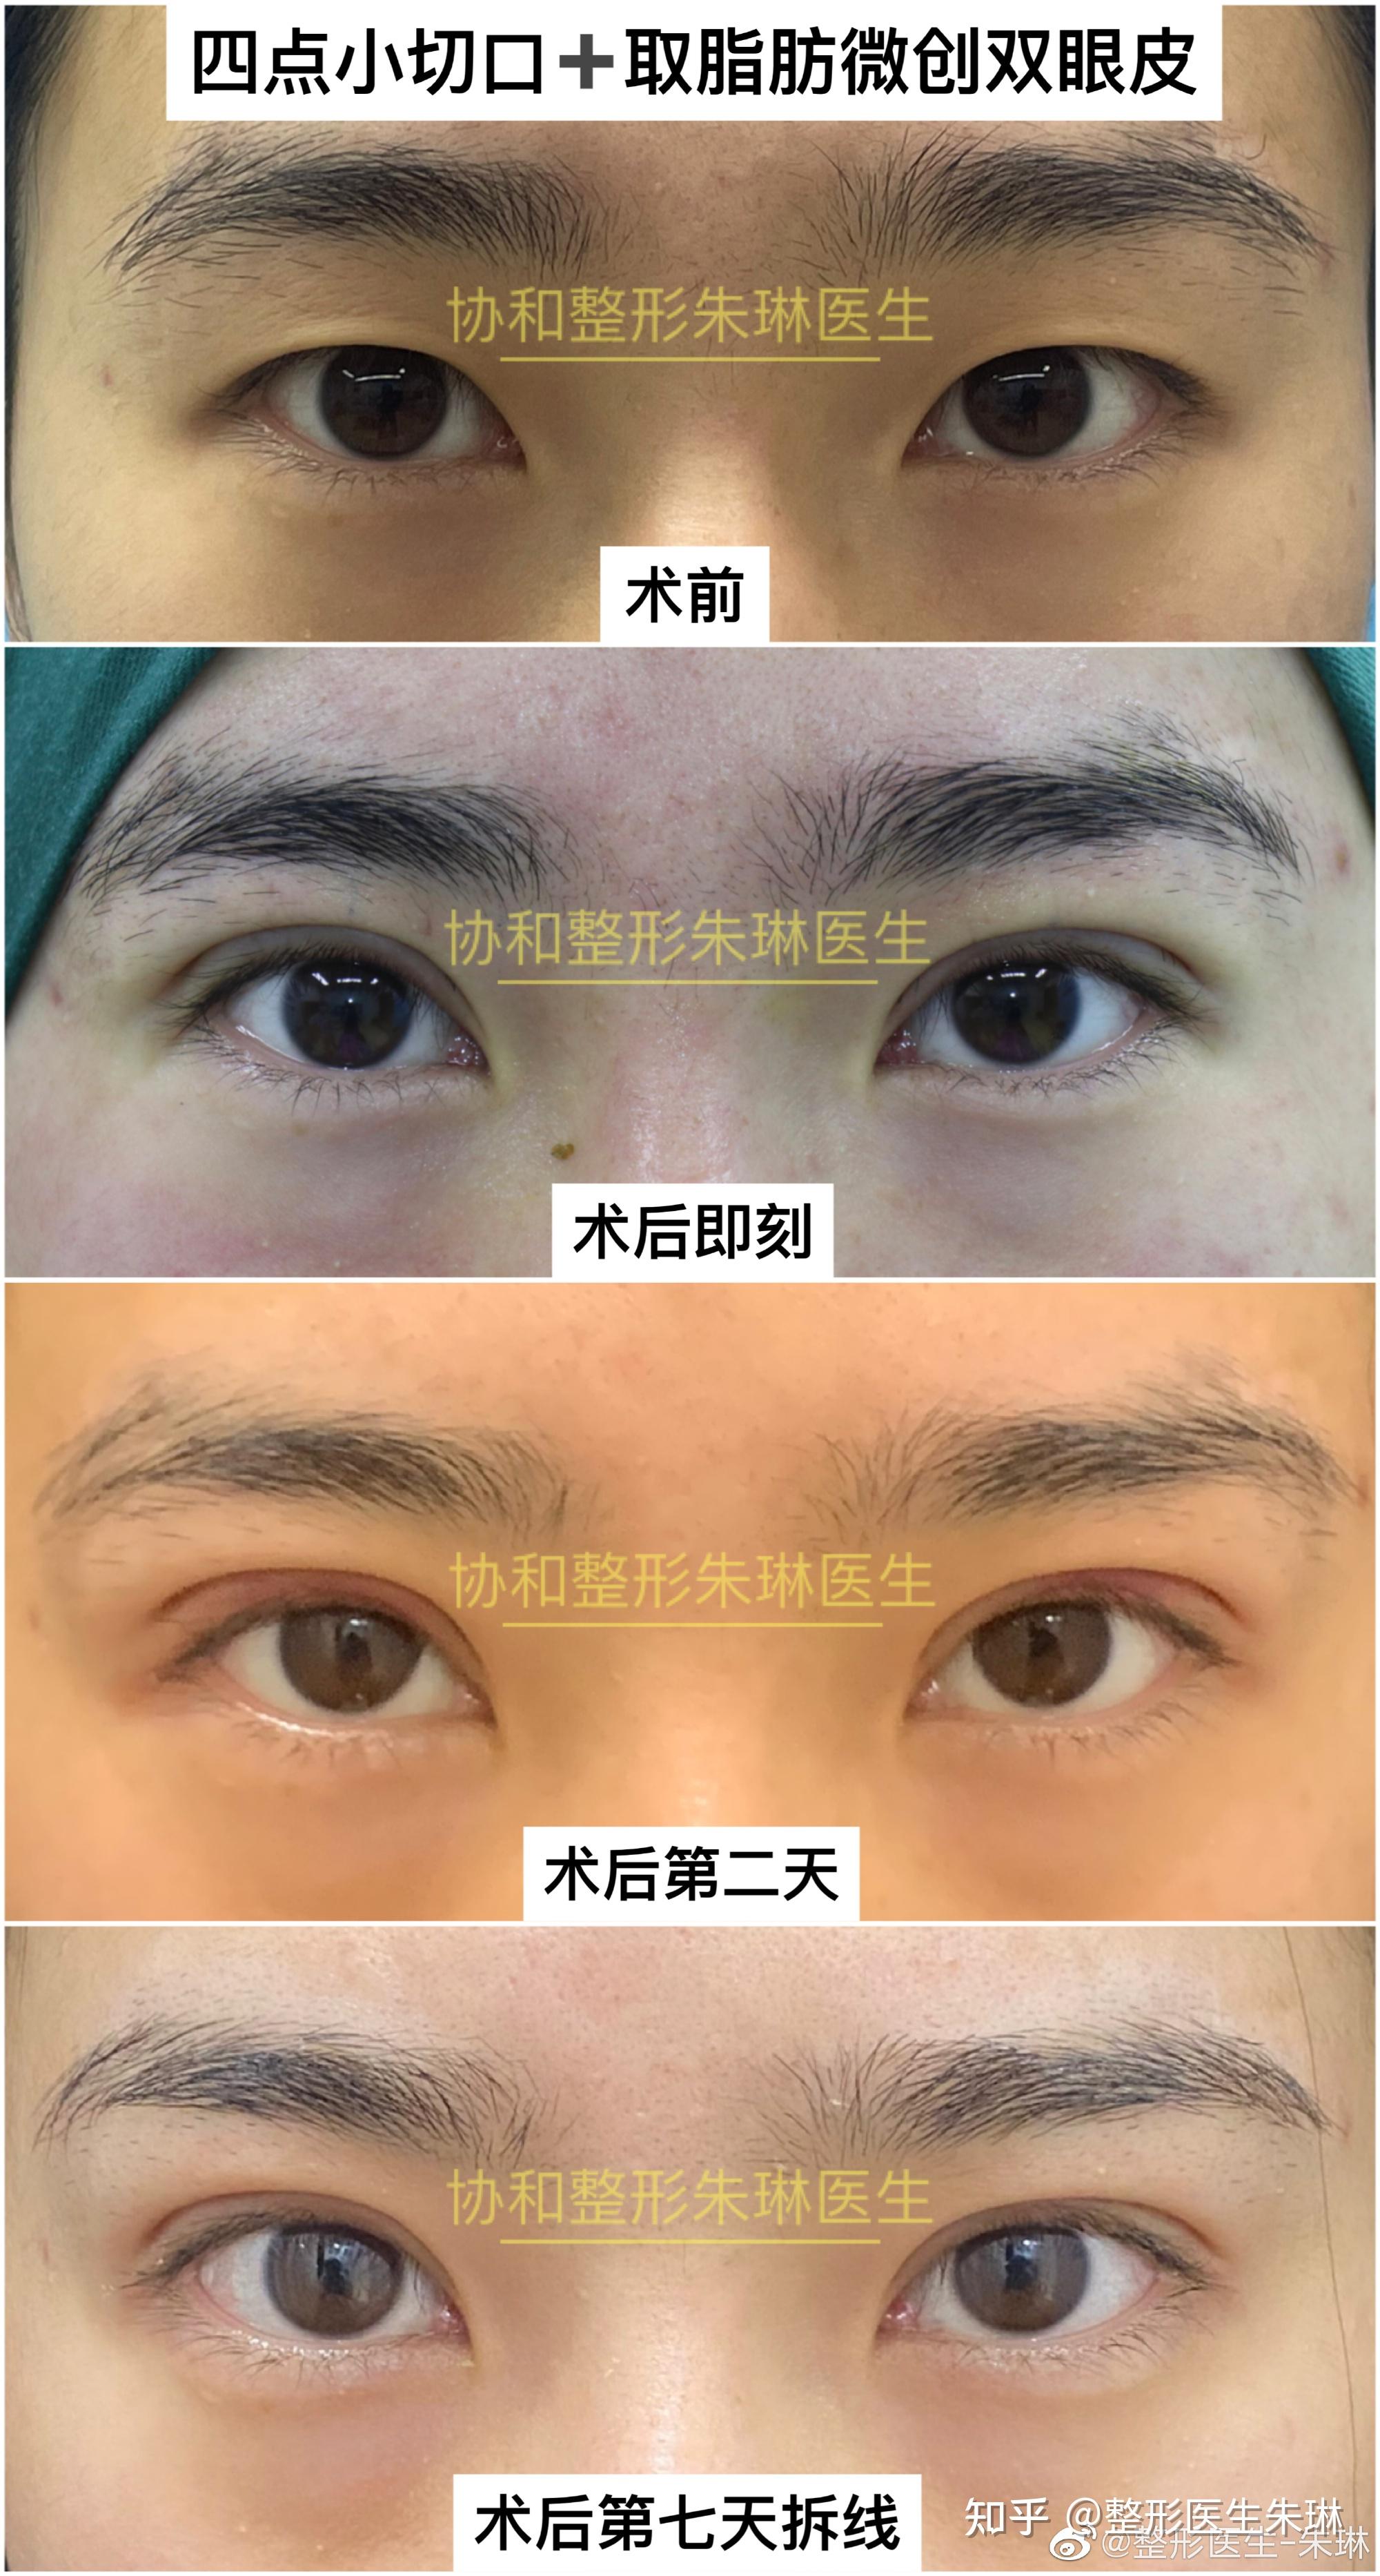 王太玲医生三点微创双眼皮案例分享-1-5 - 好大夫在线